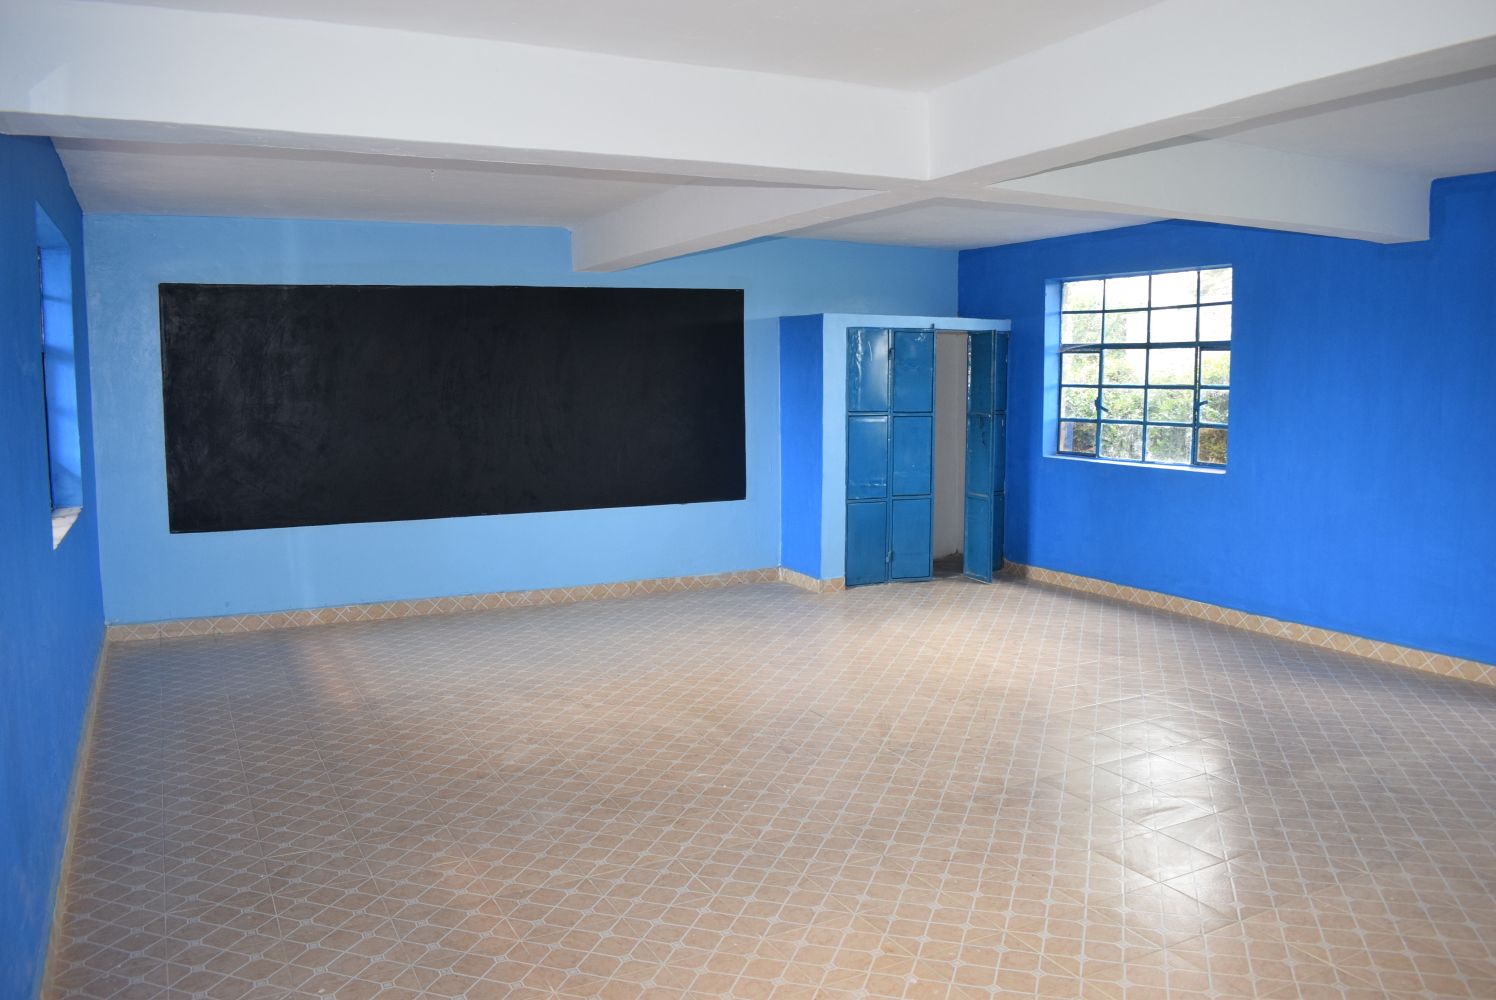 Giachong’e Primary School